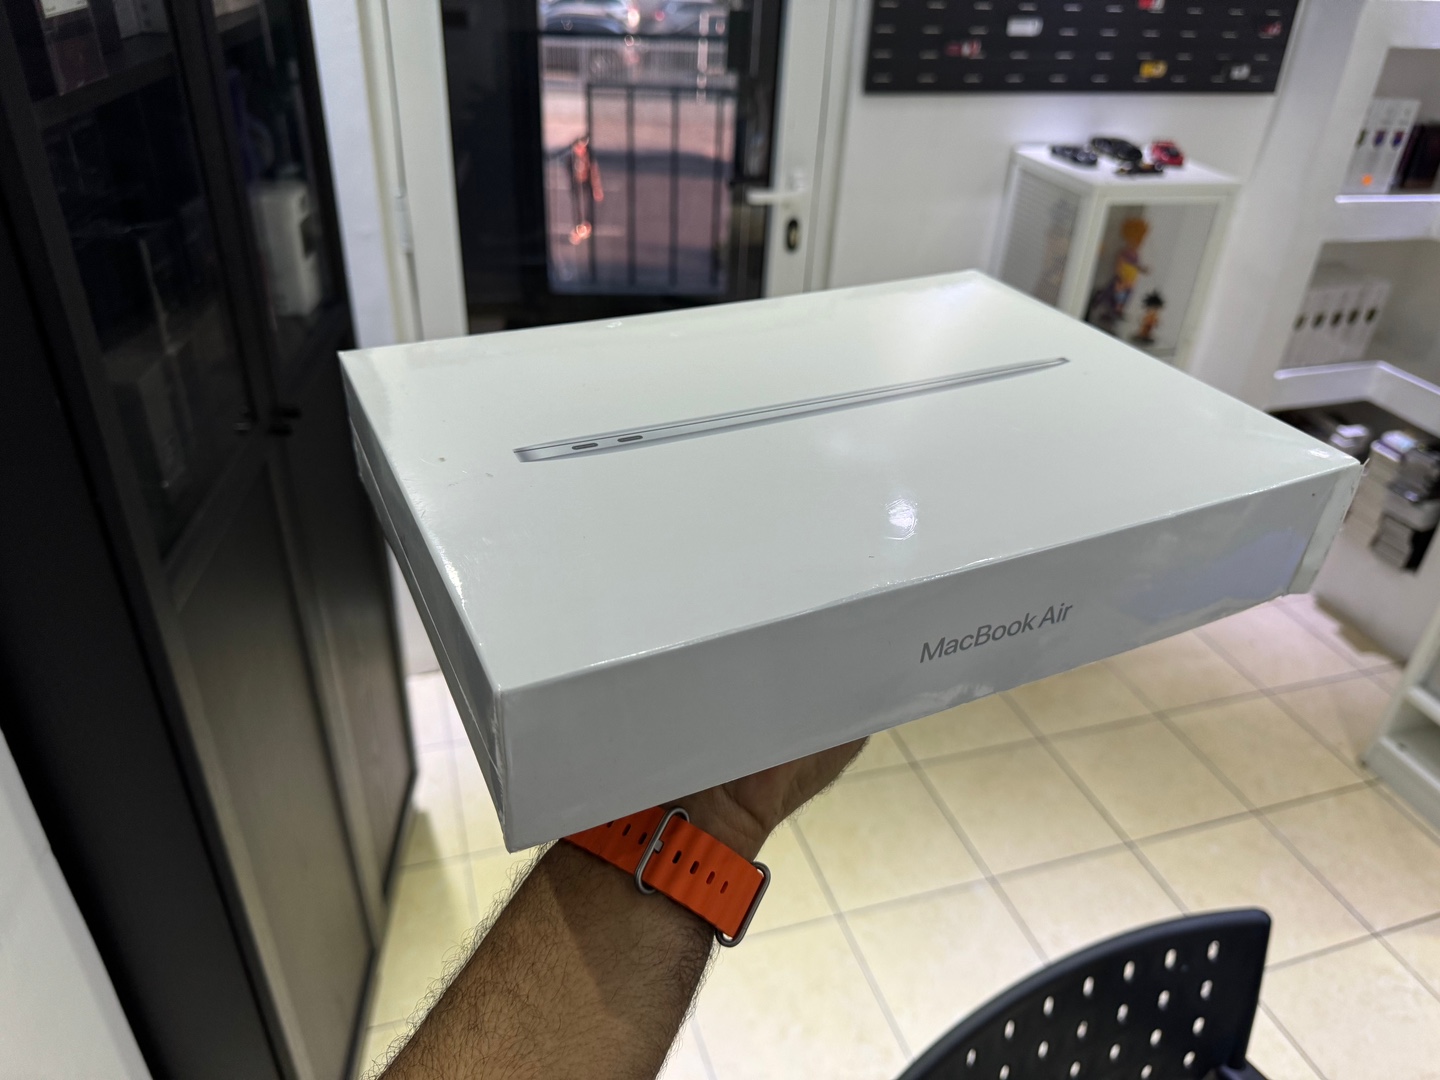 computadoras y laptops - MacBook Air 13.1 INCH  M1 Apple chip | 256GB | 8GB RAM Nuevo Sellado $ 45,900 NE